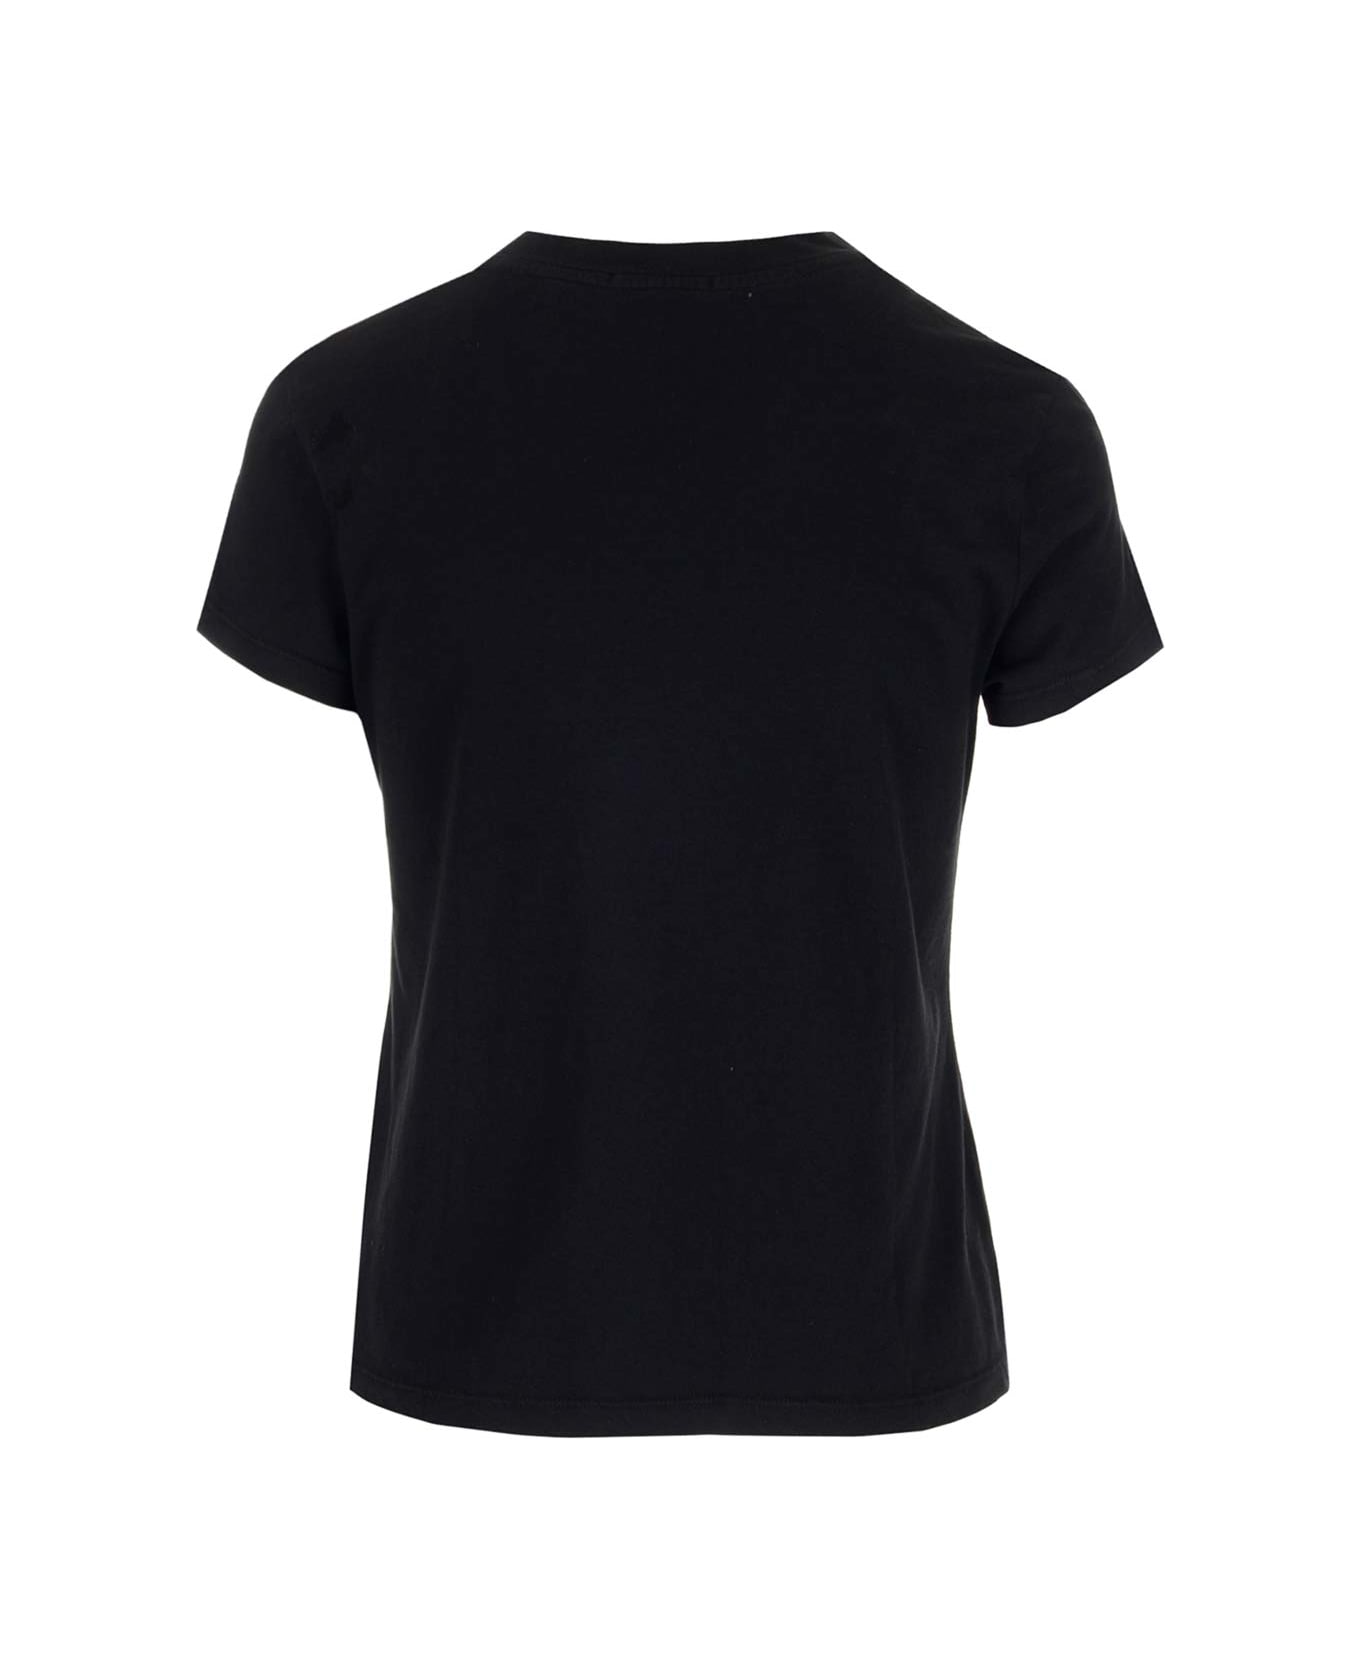 James Perse Cotton T-shirt - Blk Black